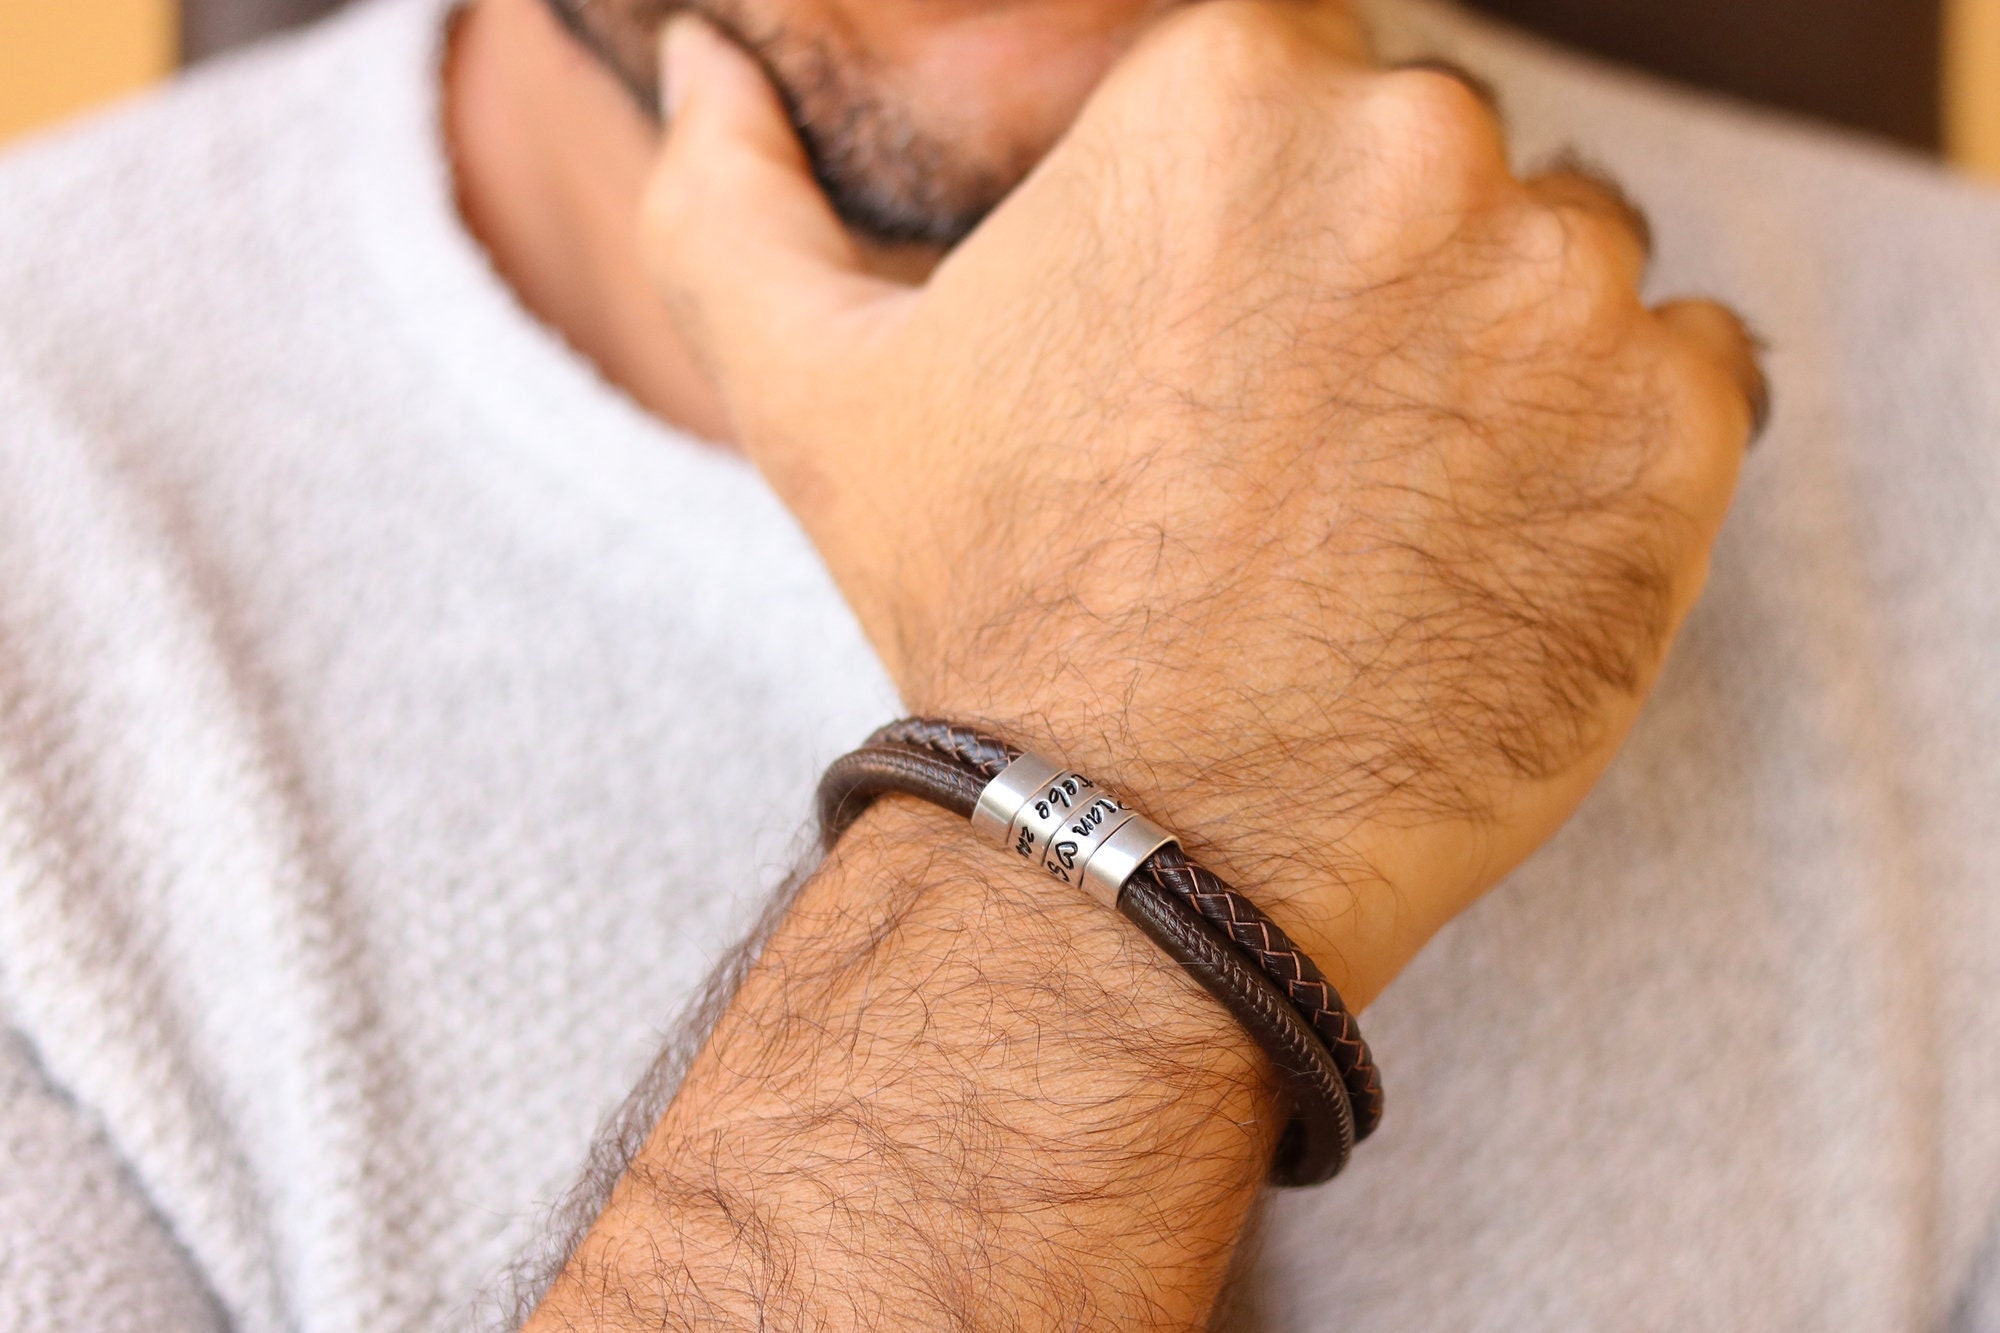 Silver Bracelet online for men, Silverlinings